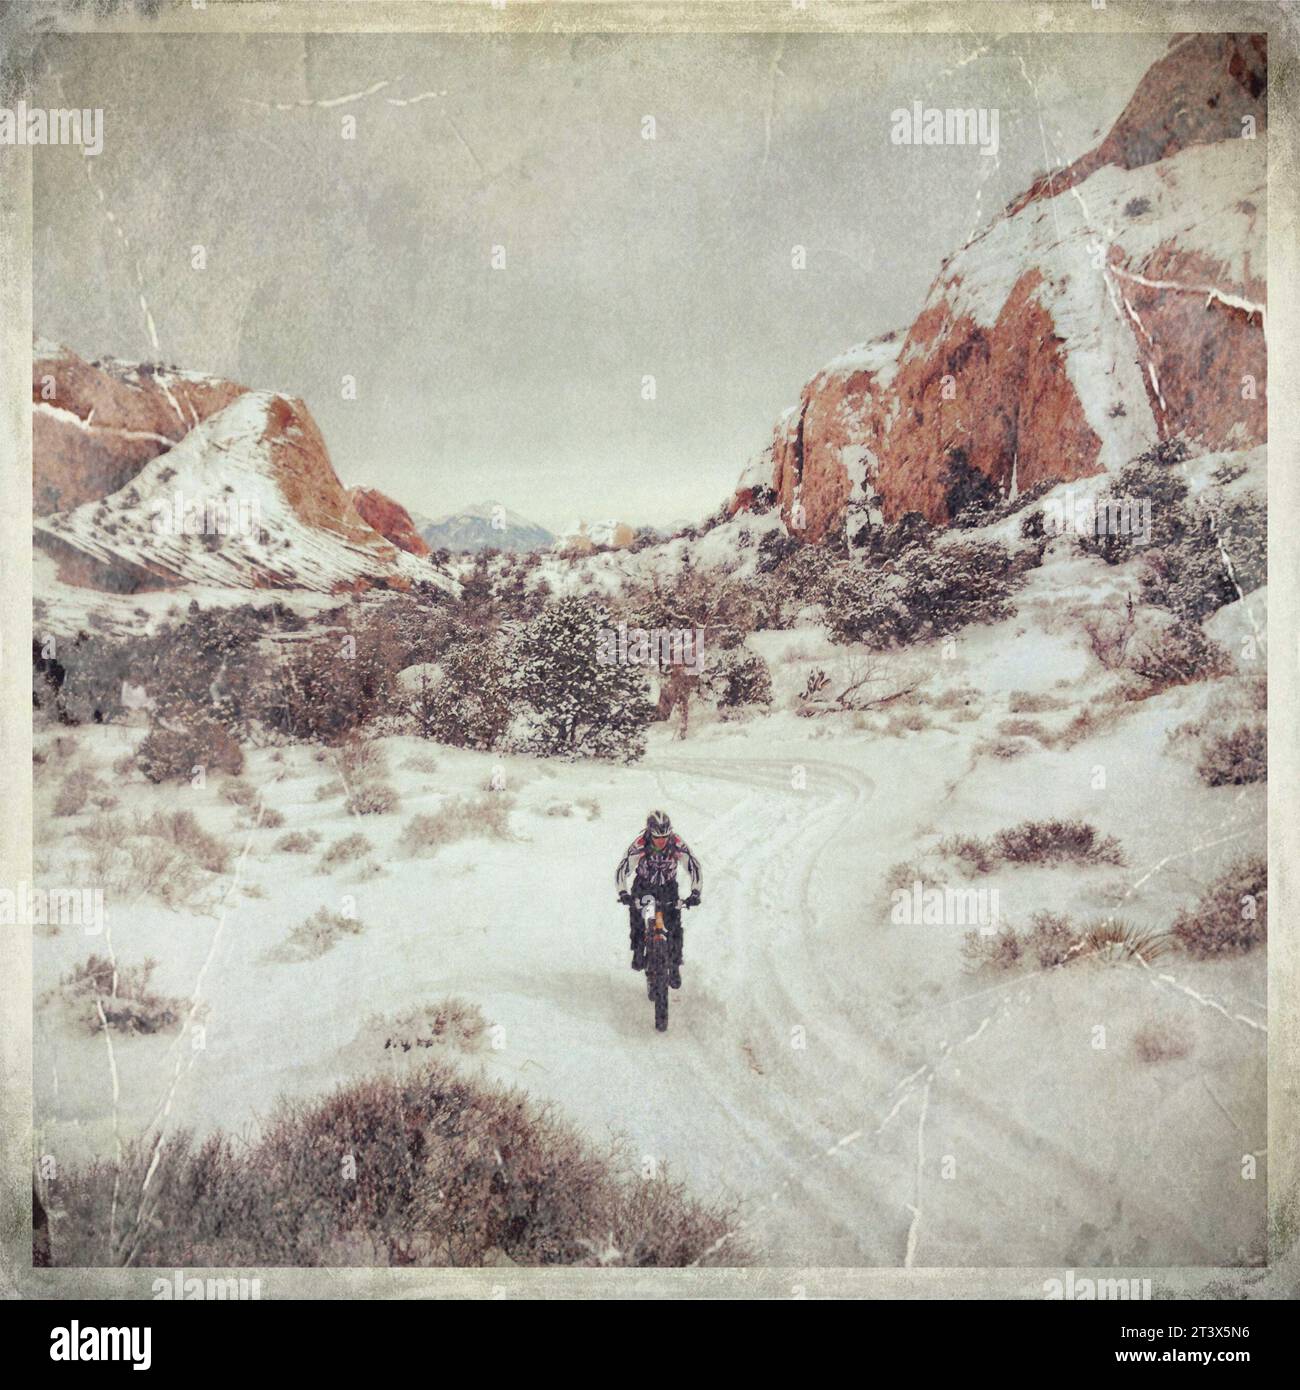 Cullen Barker fa un giro in bicicletta sulla neve vicino a Moab, Utah. Scattata con iPhone.NOTA: Questa immagine fa parte della raccolta myPhone di Aurora di immagini scattate con un dispositivo mobile Foto Stock